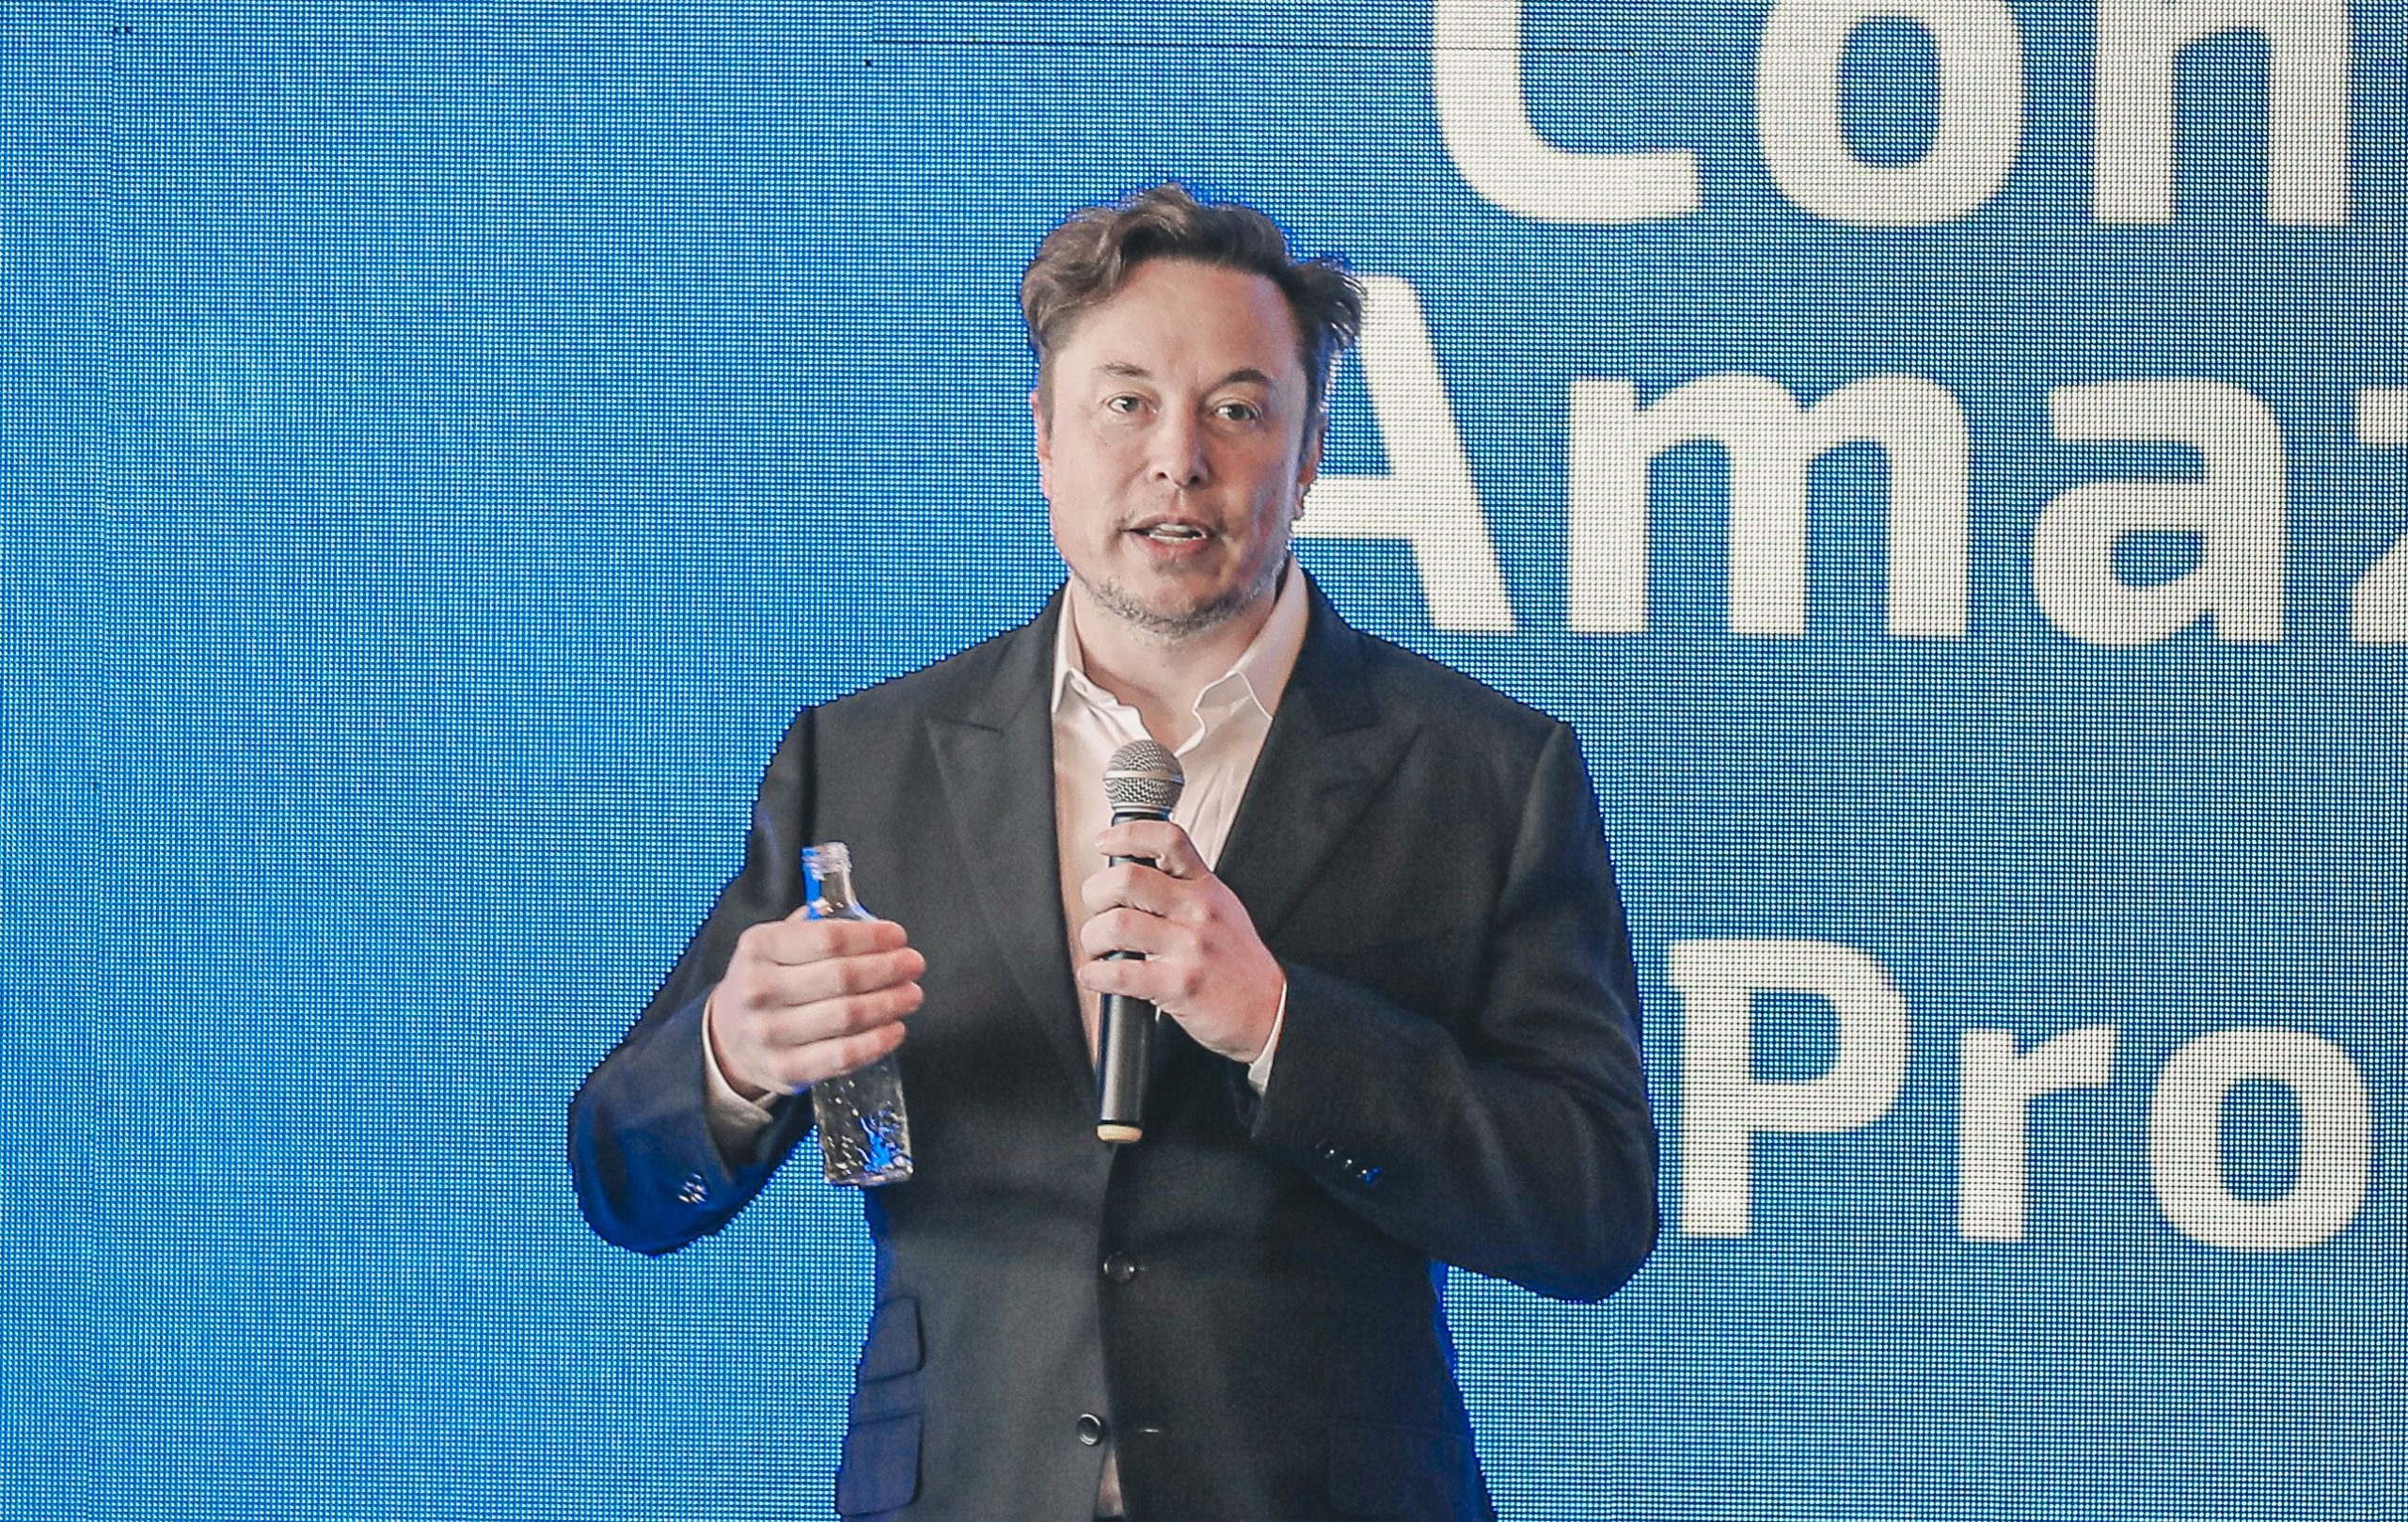 Elon Musk belooft de zaken recht te zetten nadat Tesla een kleine bakkerij verliet met een onbetaalde bestelling